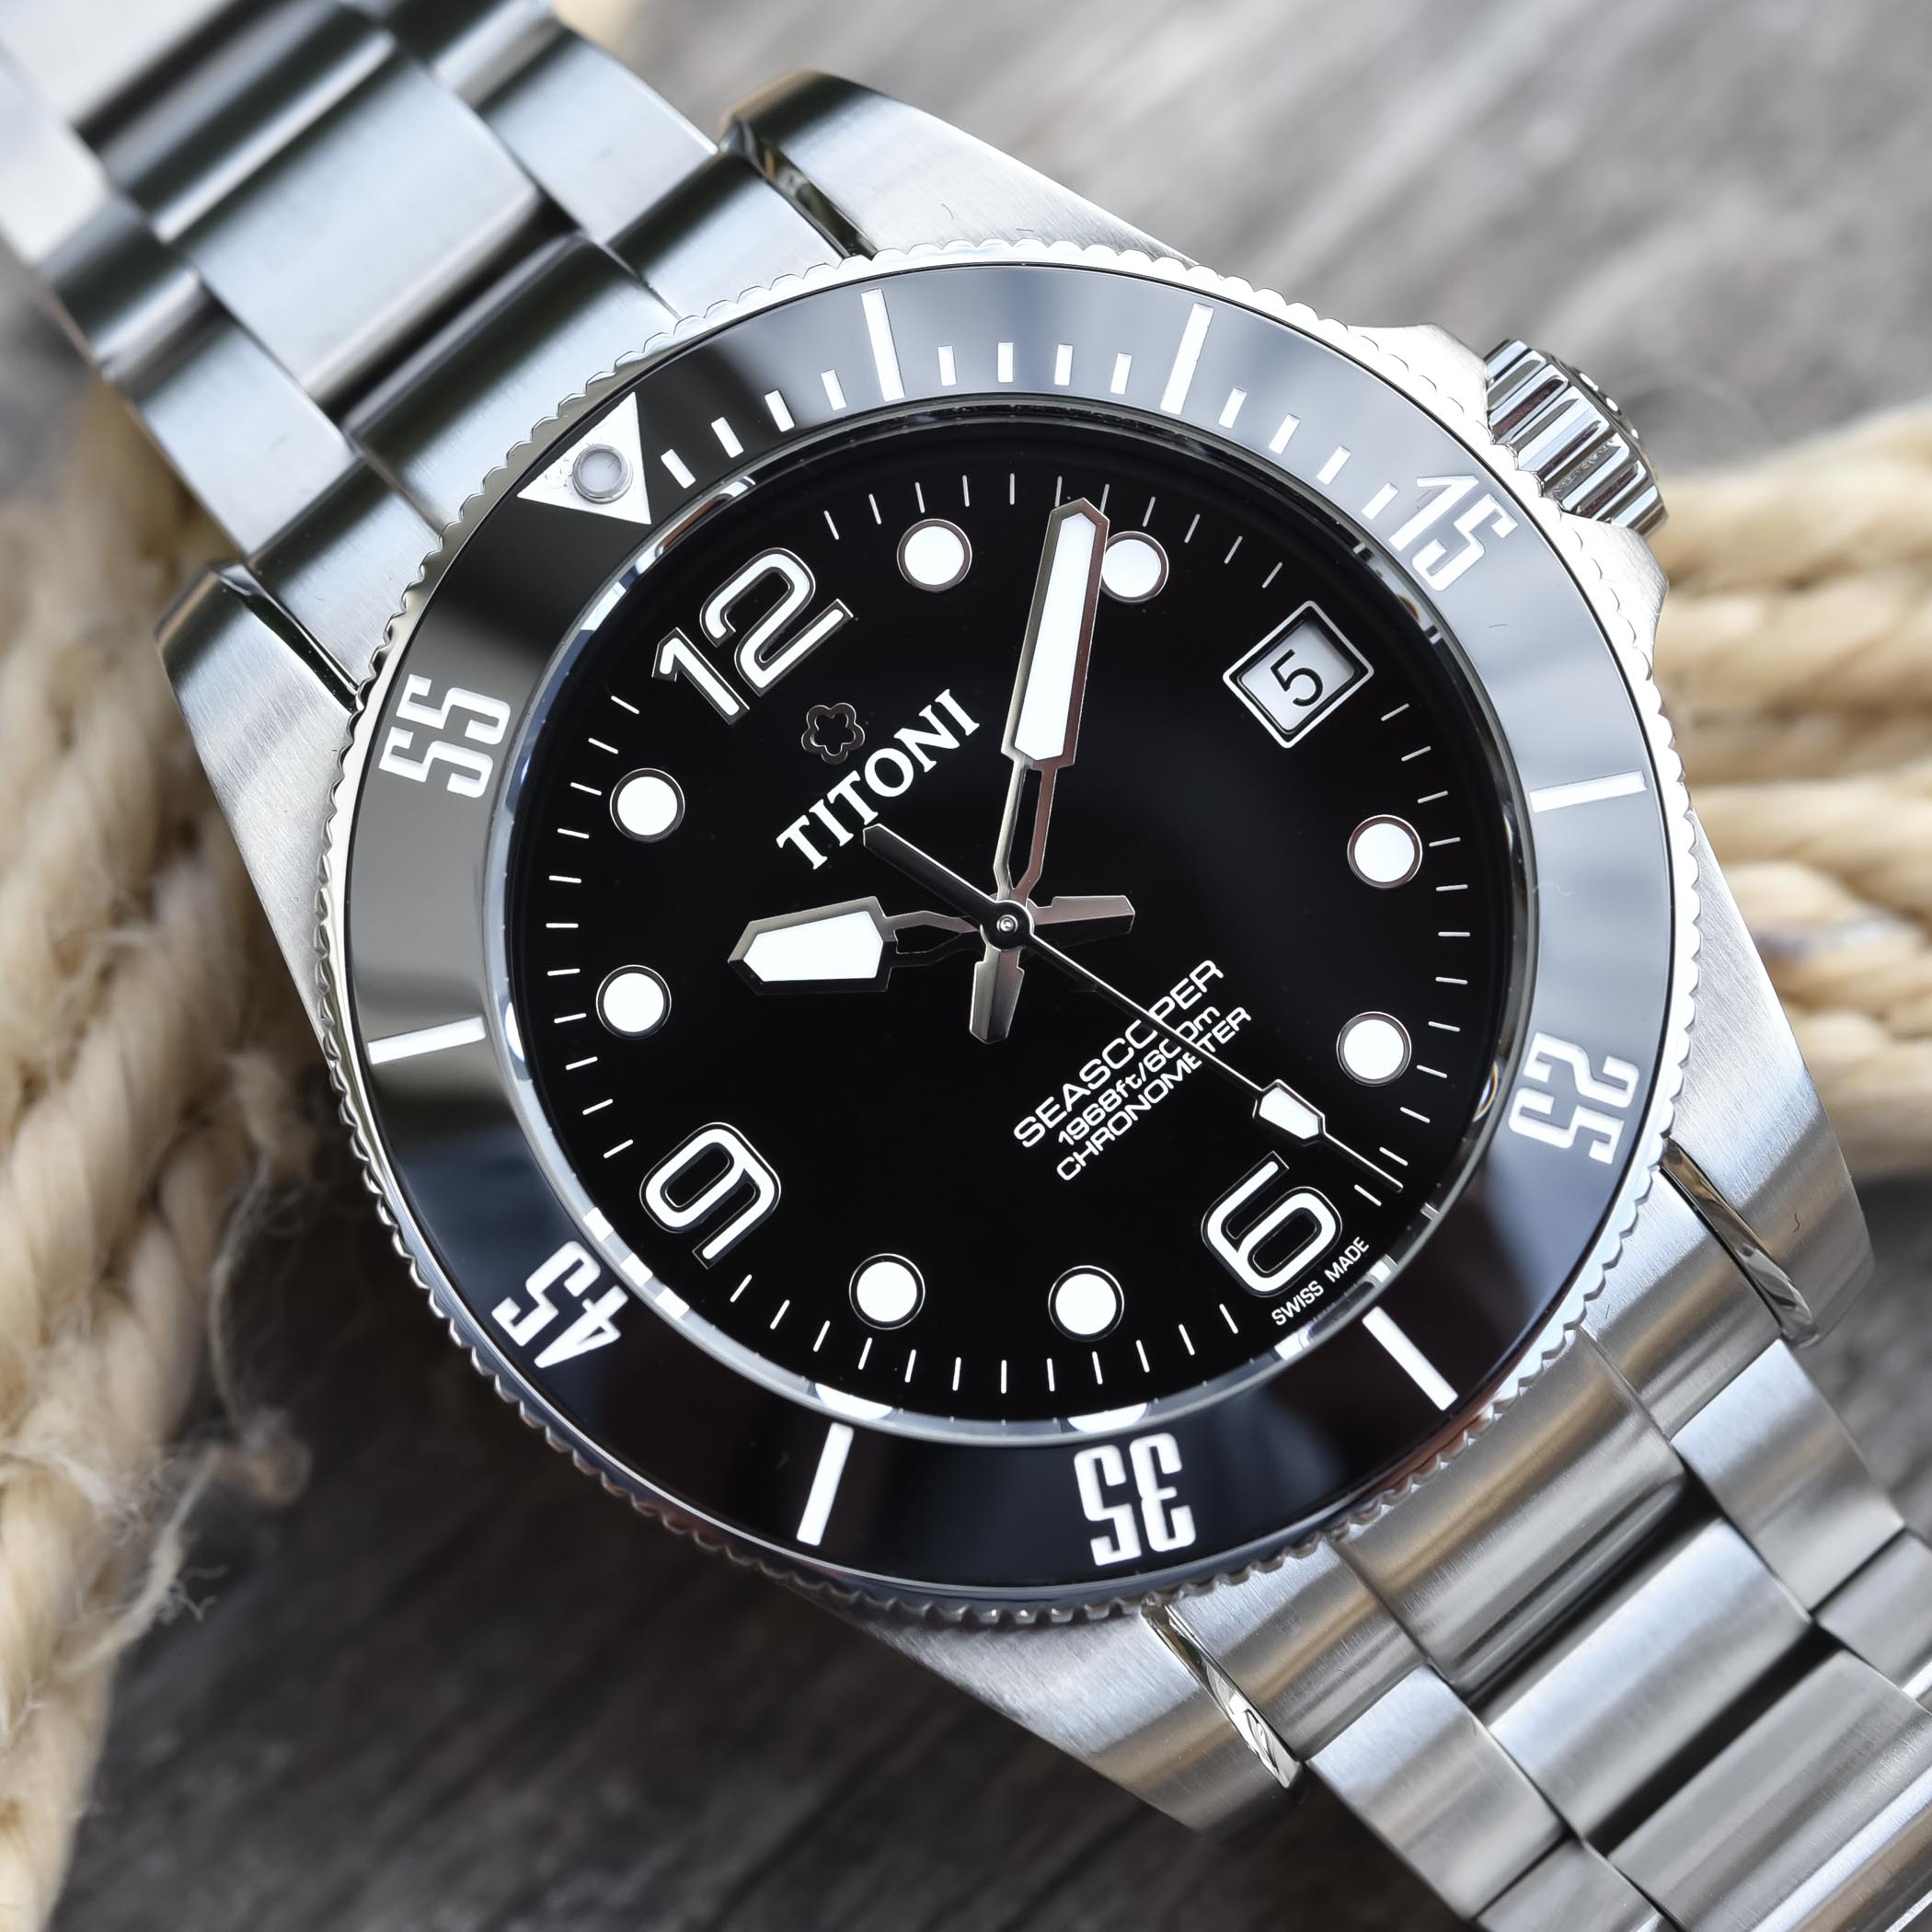 Titoni Seascoper Dive Watch